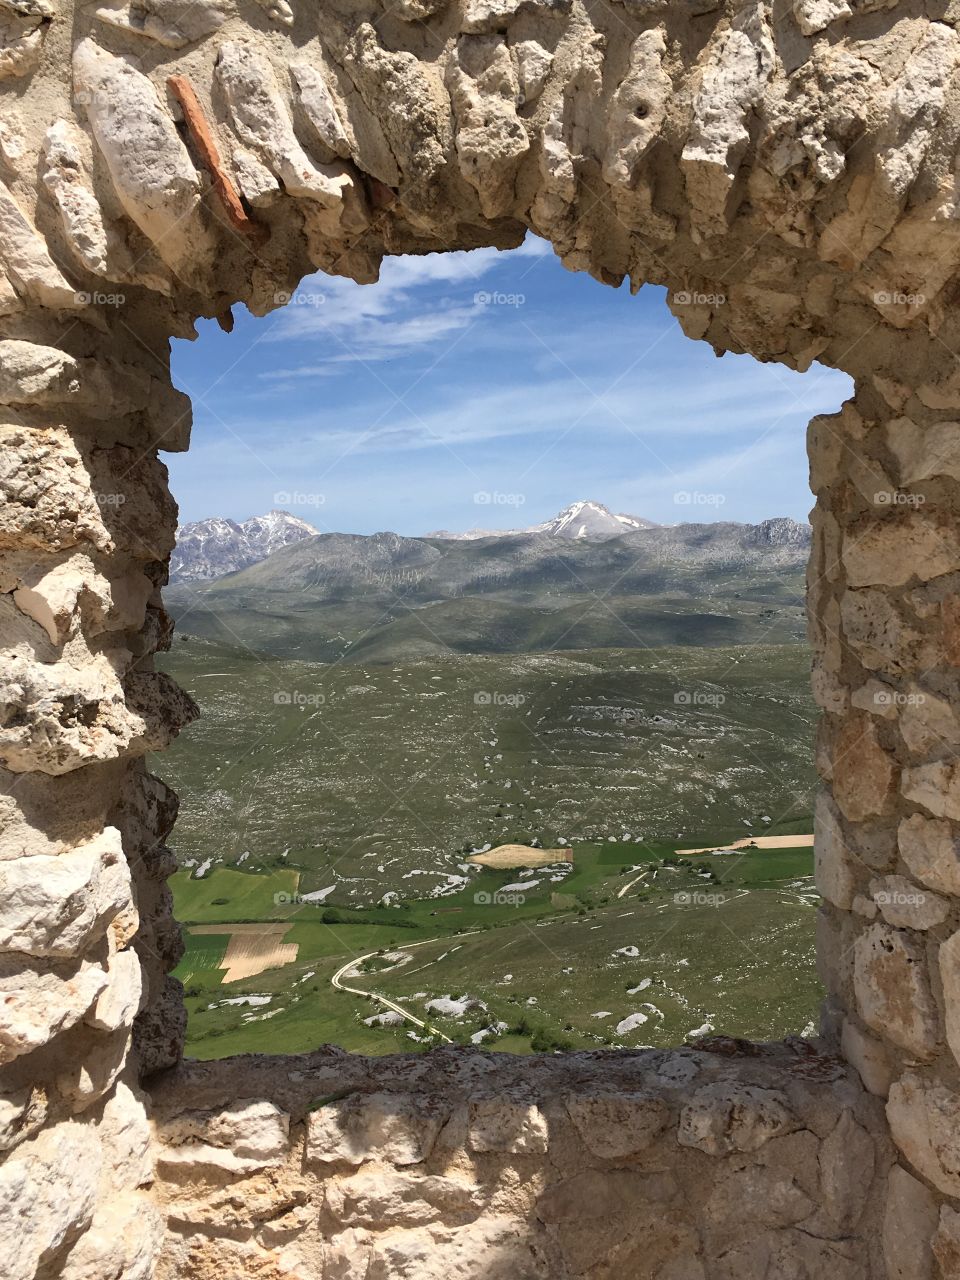 View of a mountain through window